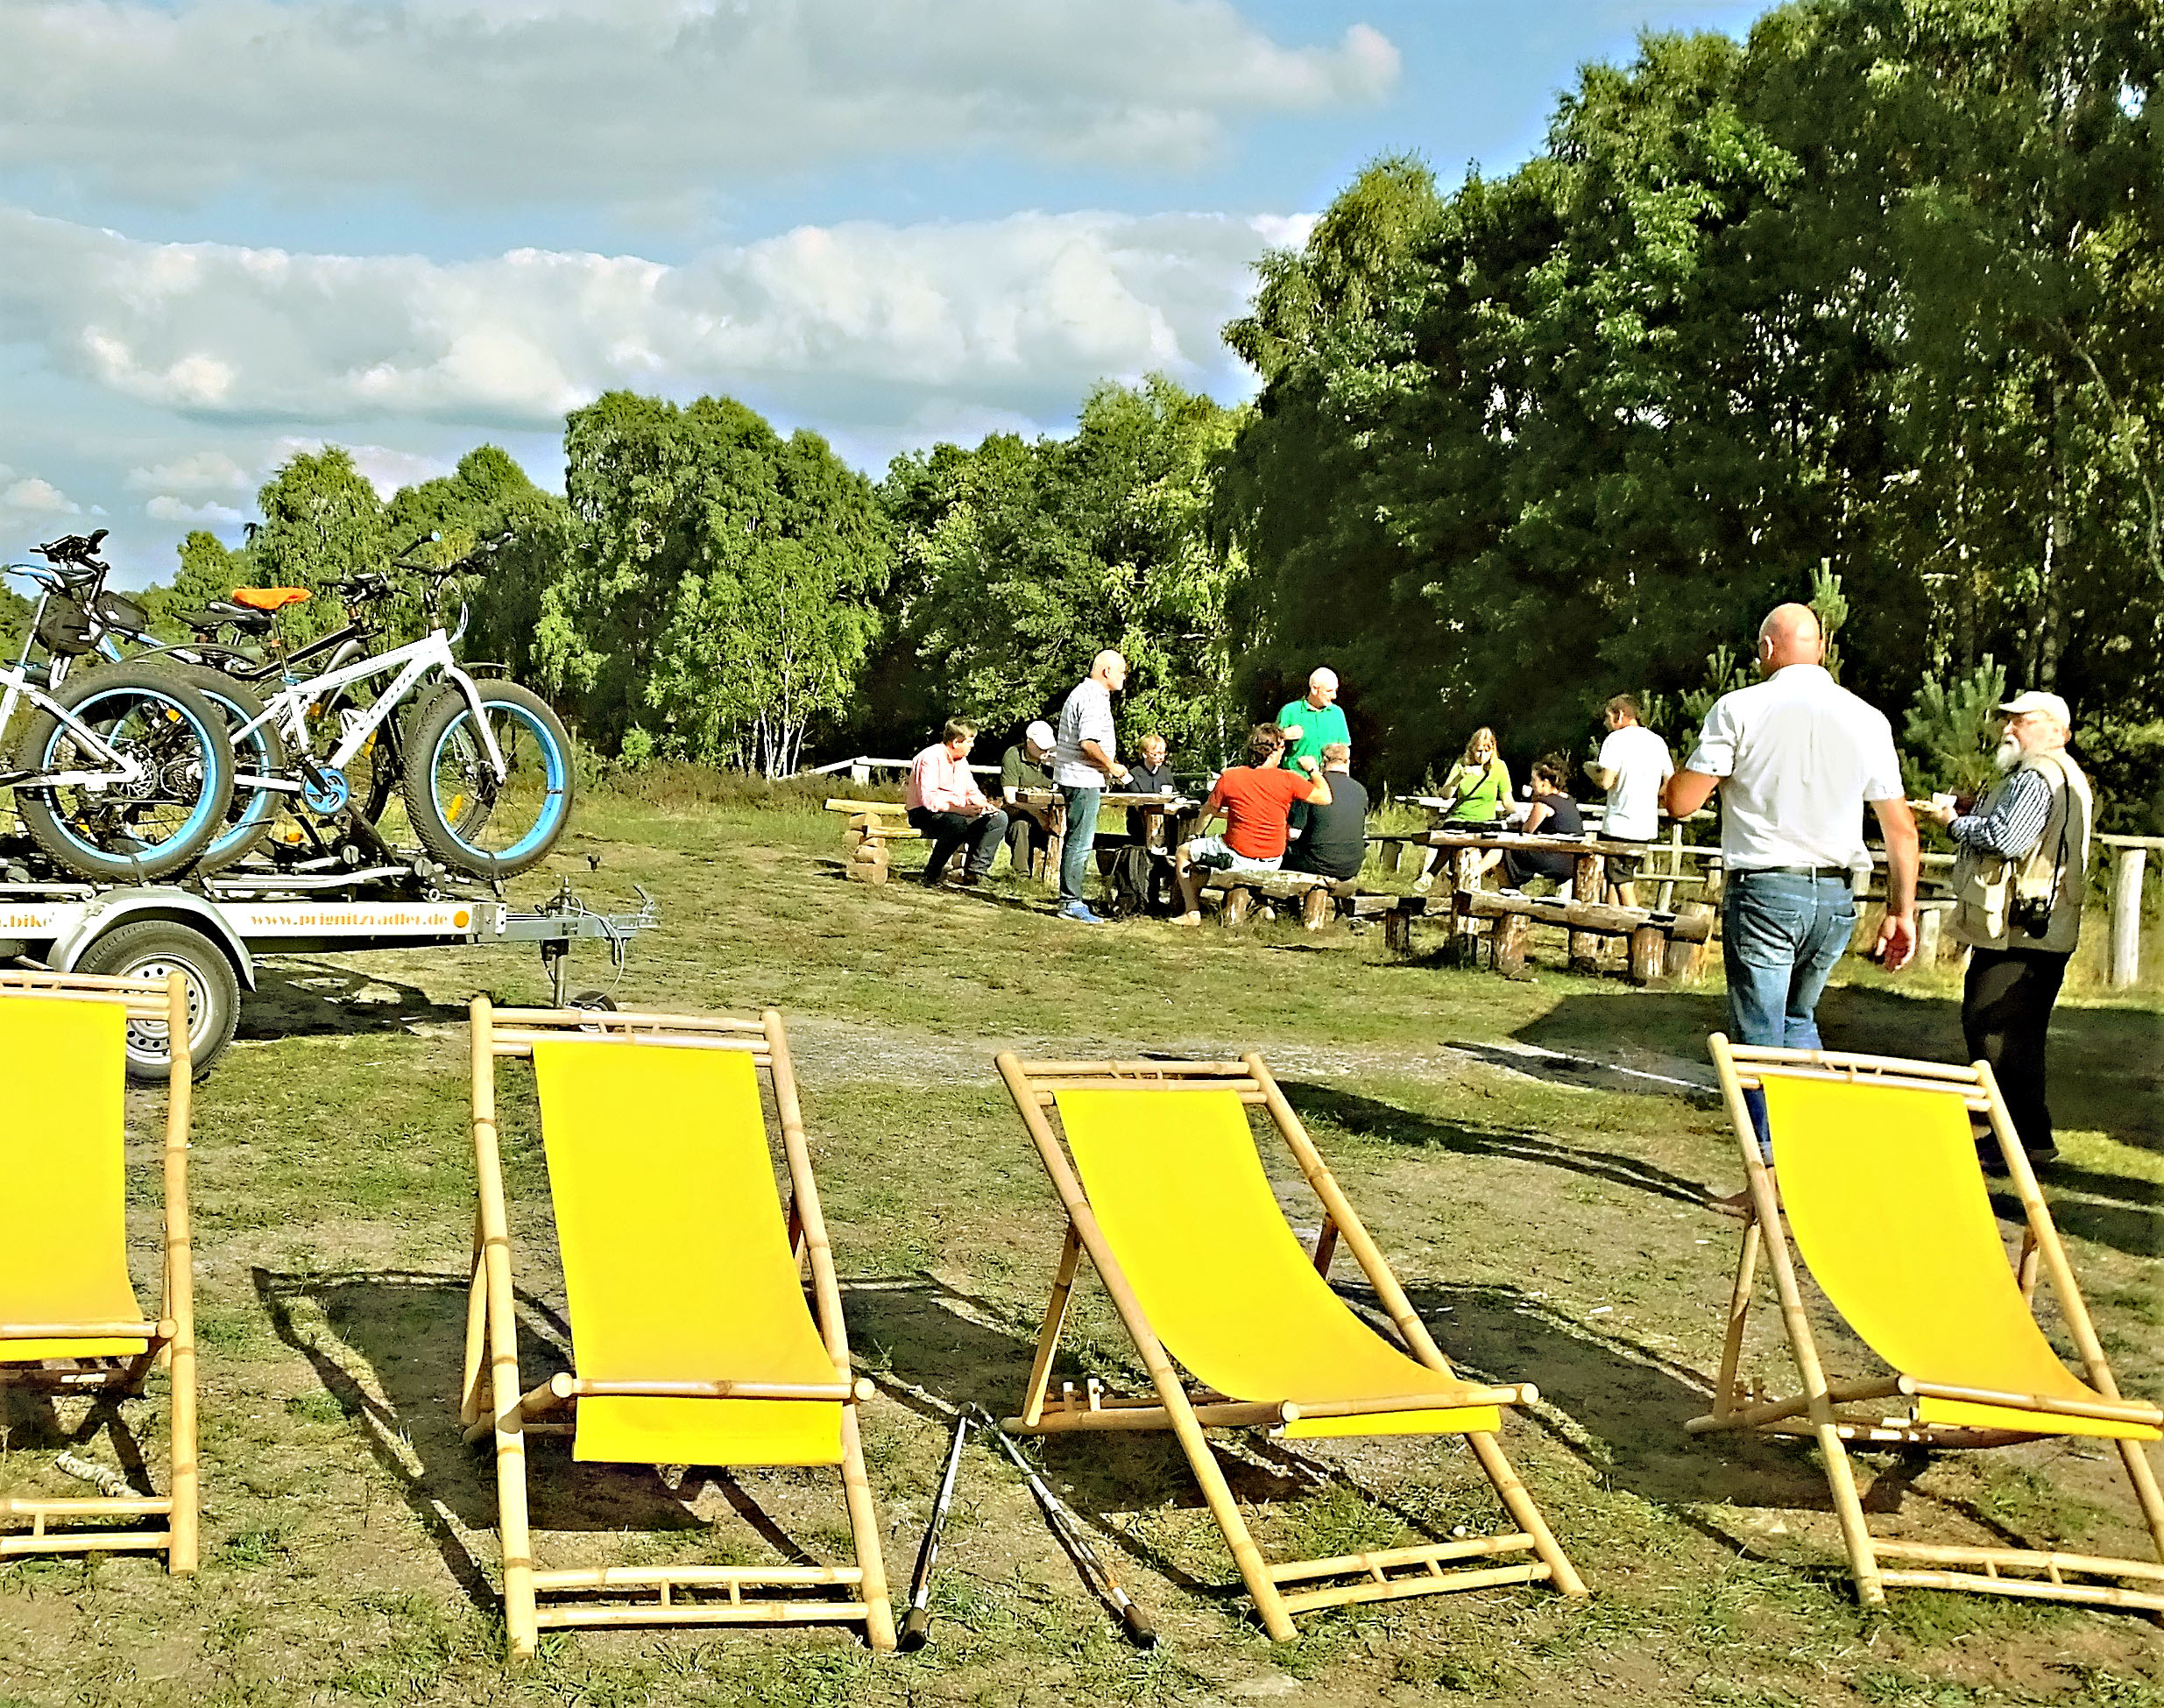 Eine zünftige Picknick-Rast auf dem Sielmann-Hügel, benannt nach dem großen Naturliebhaber und Tierfilmer Heinz Sielmann (1917 - 2006),  ist oft das Highlight einer Heidetour.